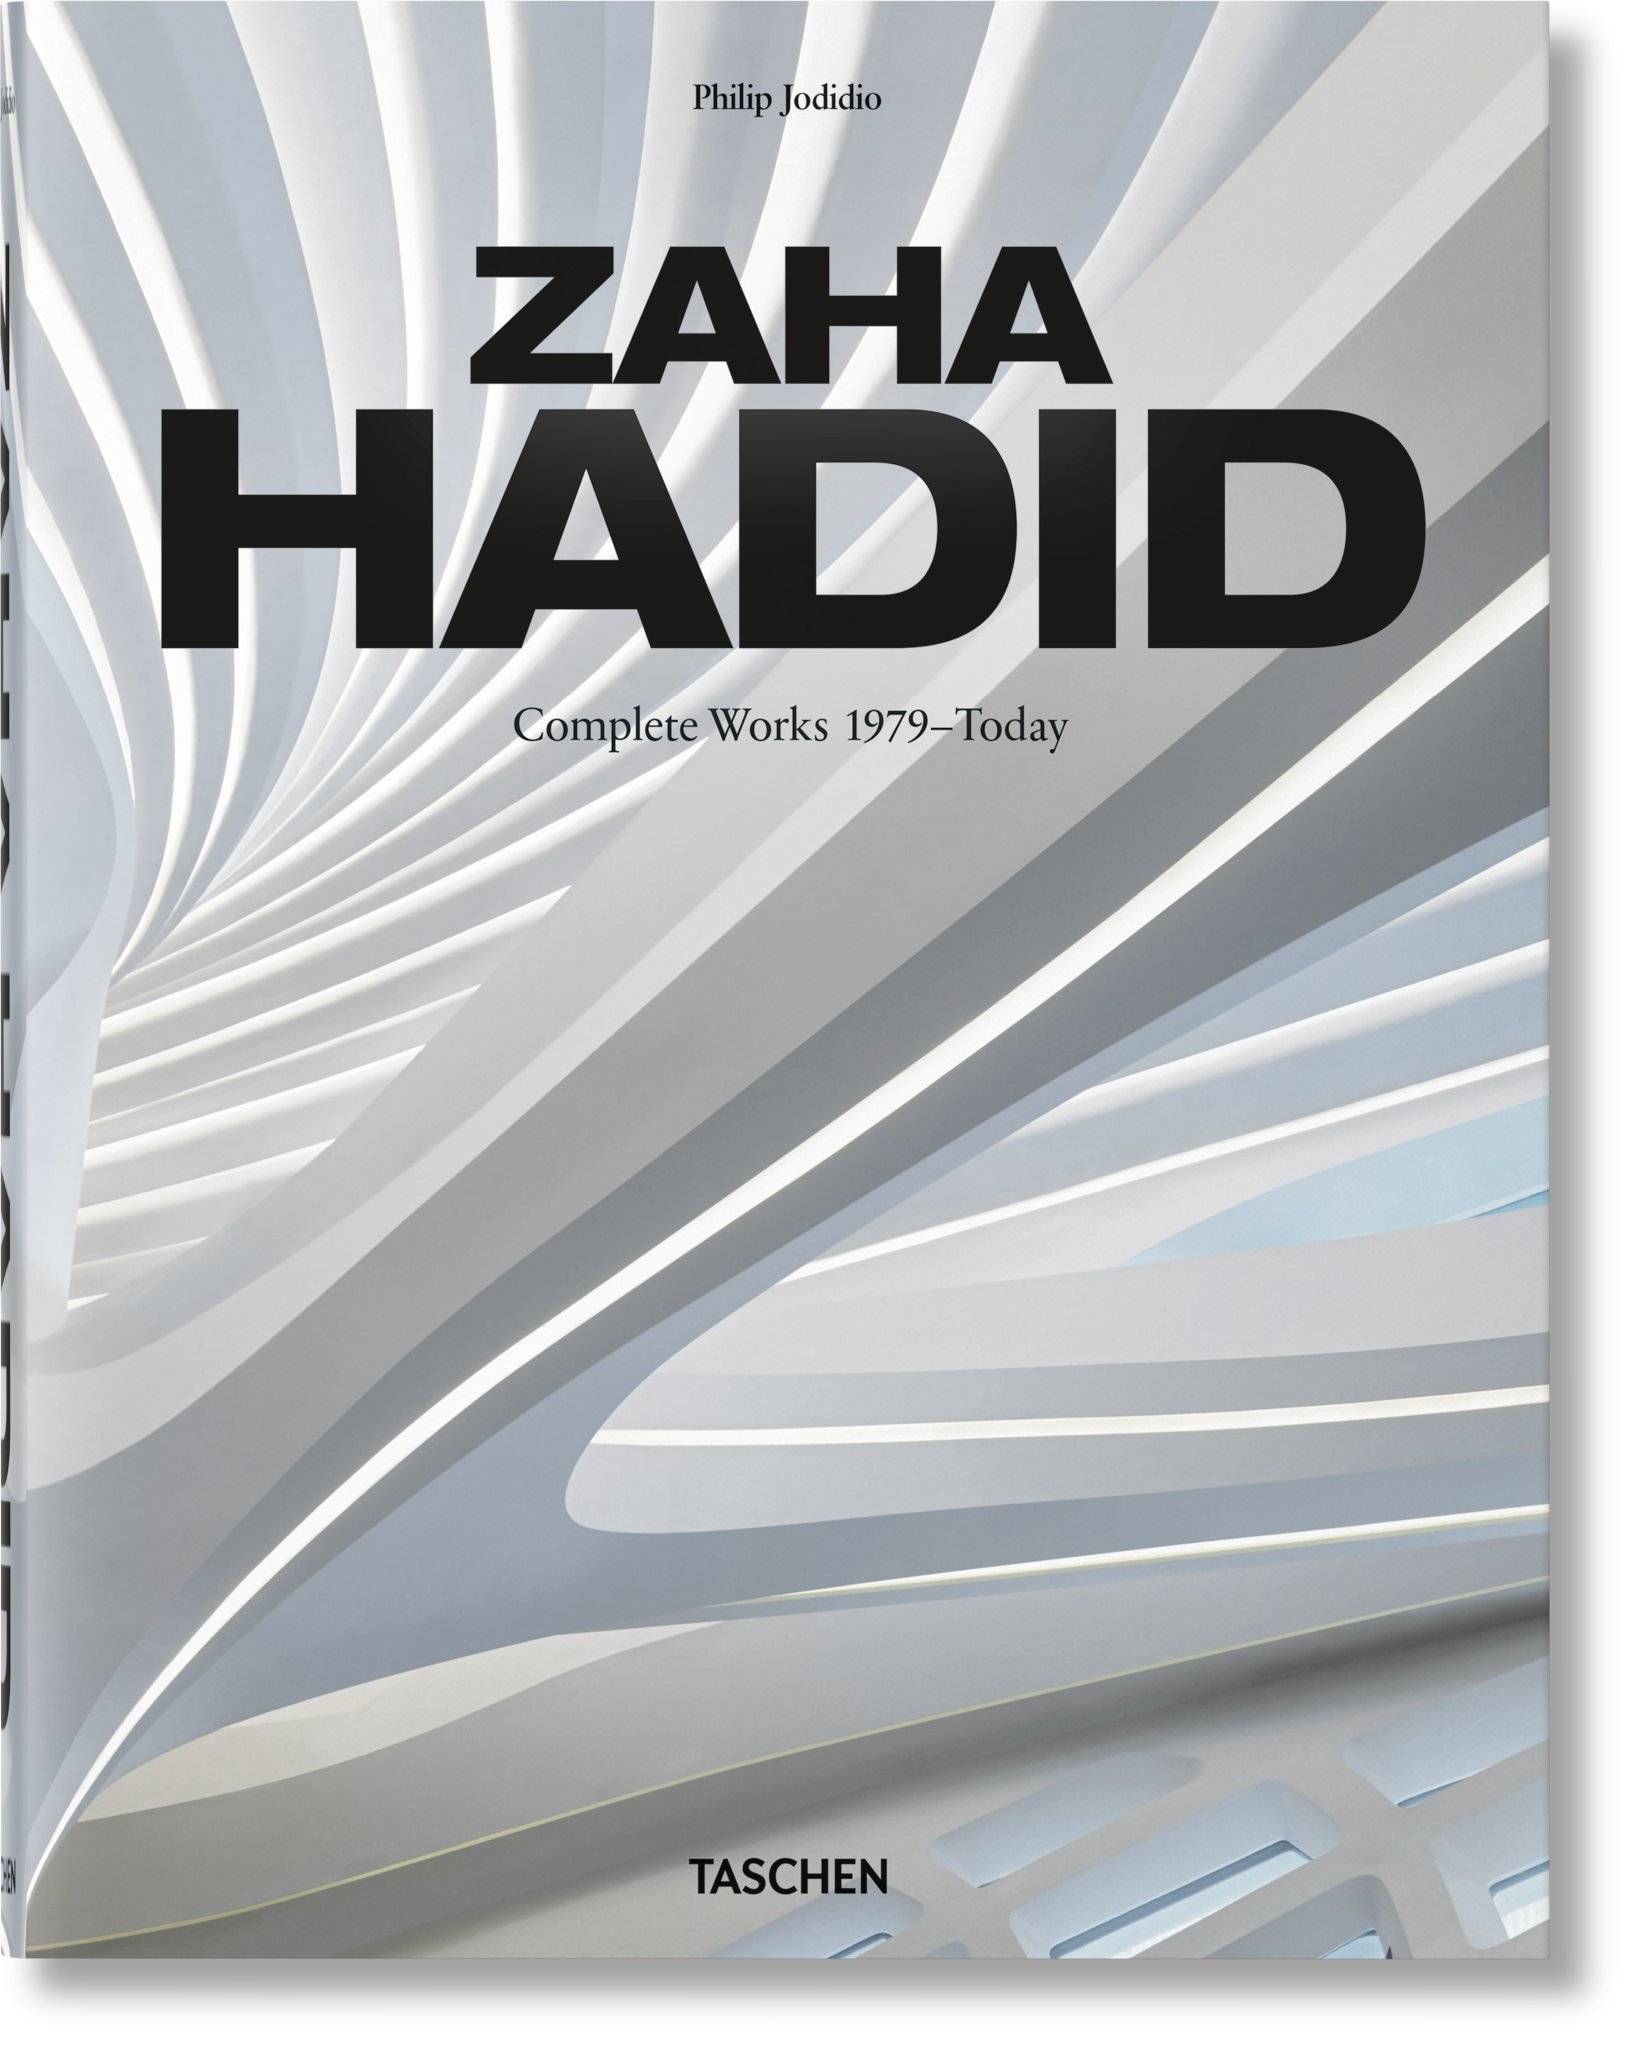 L’œuvre polémique de Zaha Hadid s’invite chez Taschen